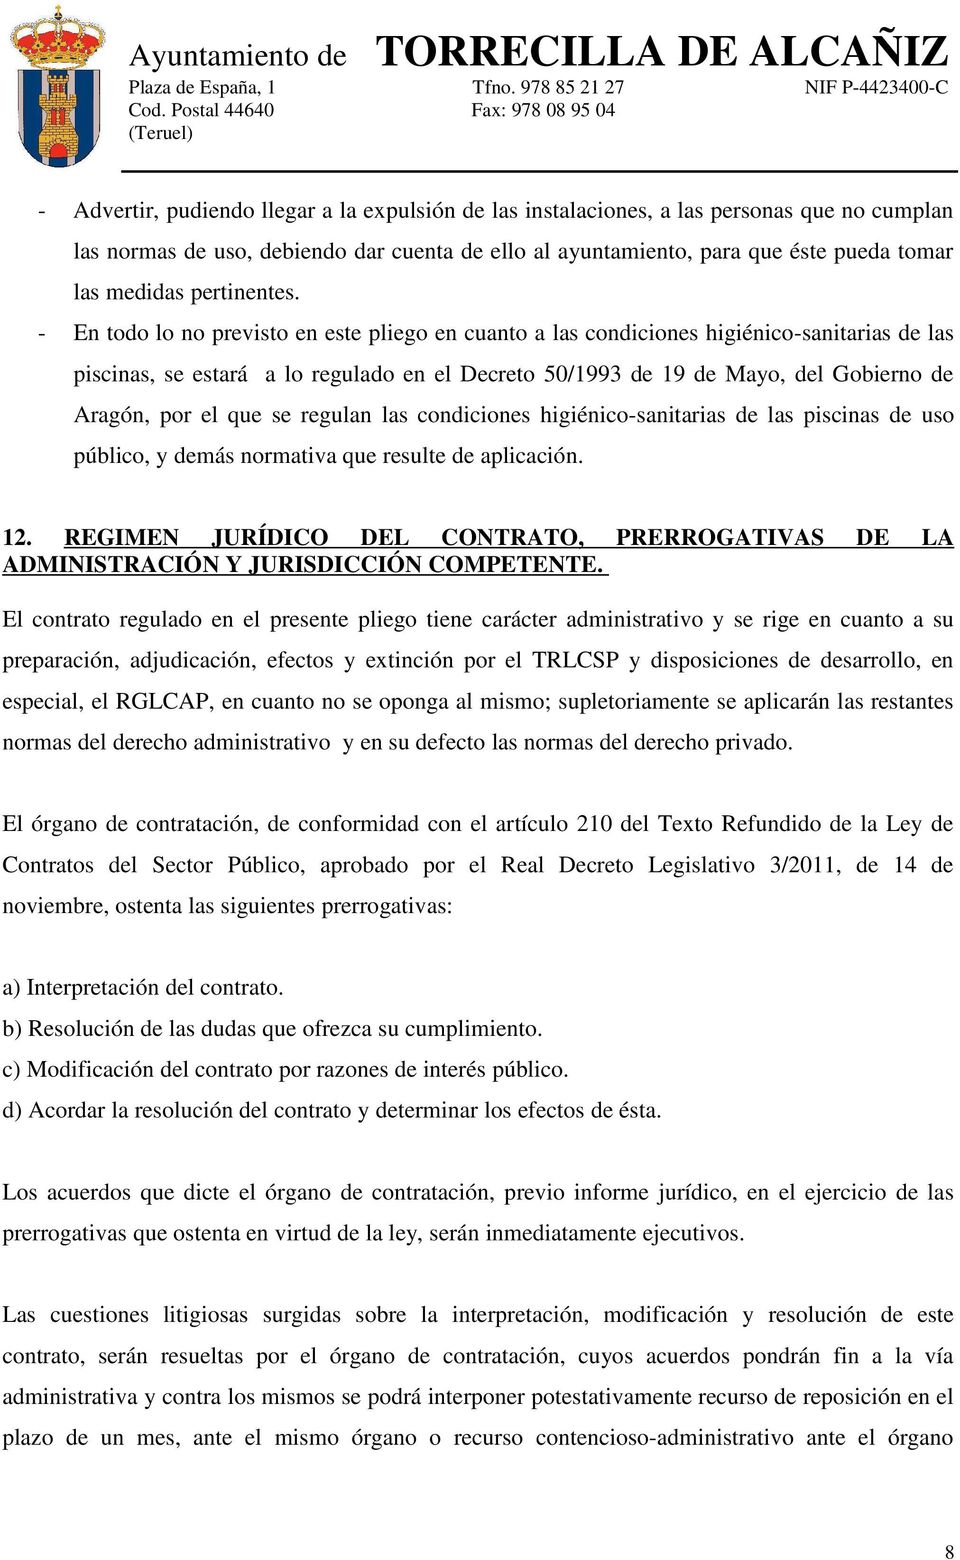 - En todo lo no previsto en este pliego en cuanto a las condiciones higiénico-sanitarias de las piscinas, se estará a lo regulado en el Decreto 50/1993 de 19 de Mayo, del Gobierno de Aragón, por el